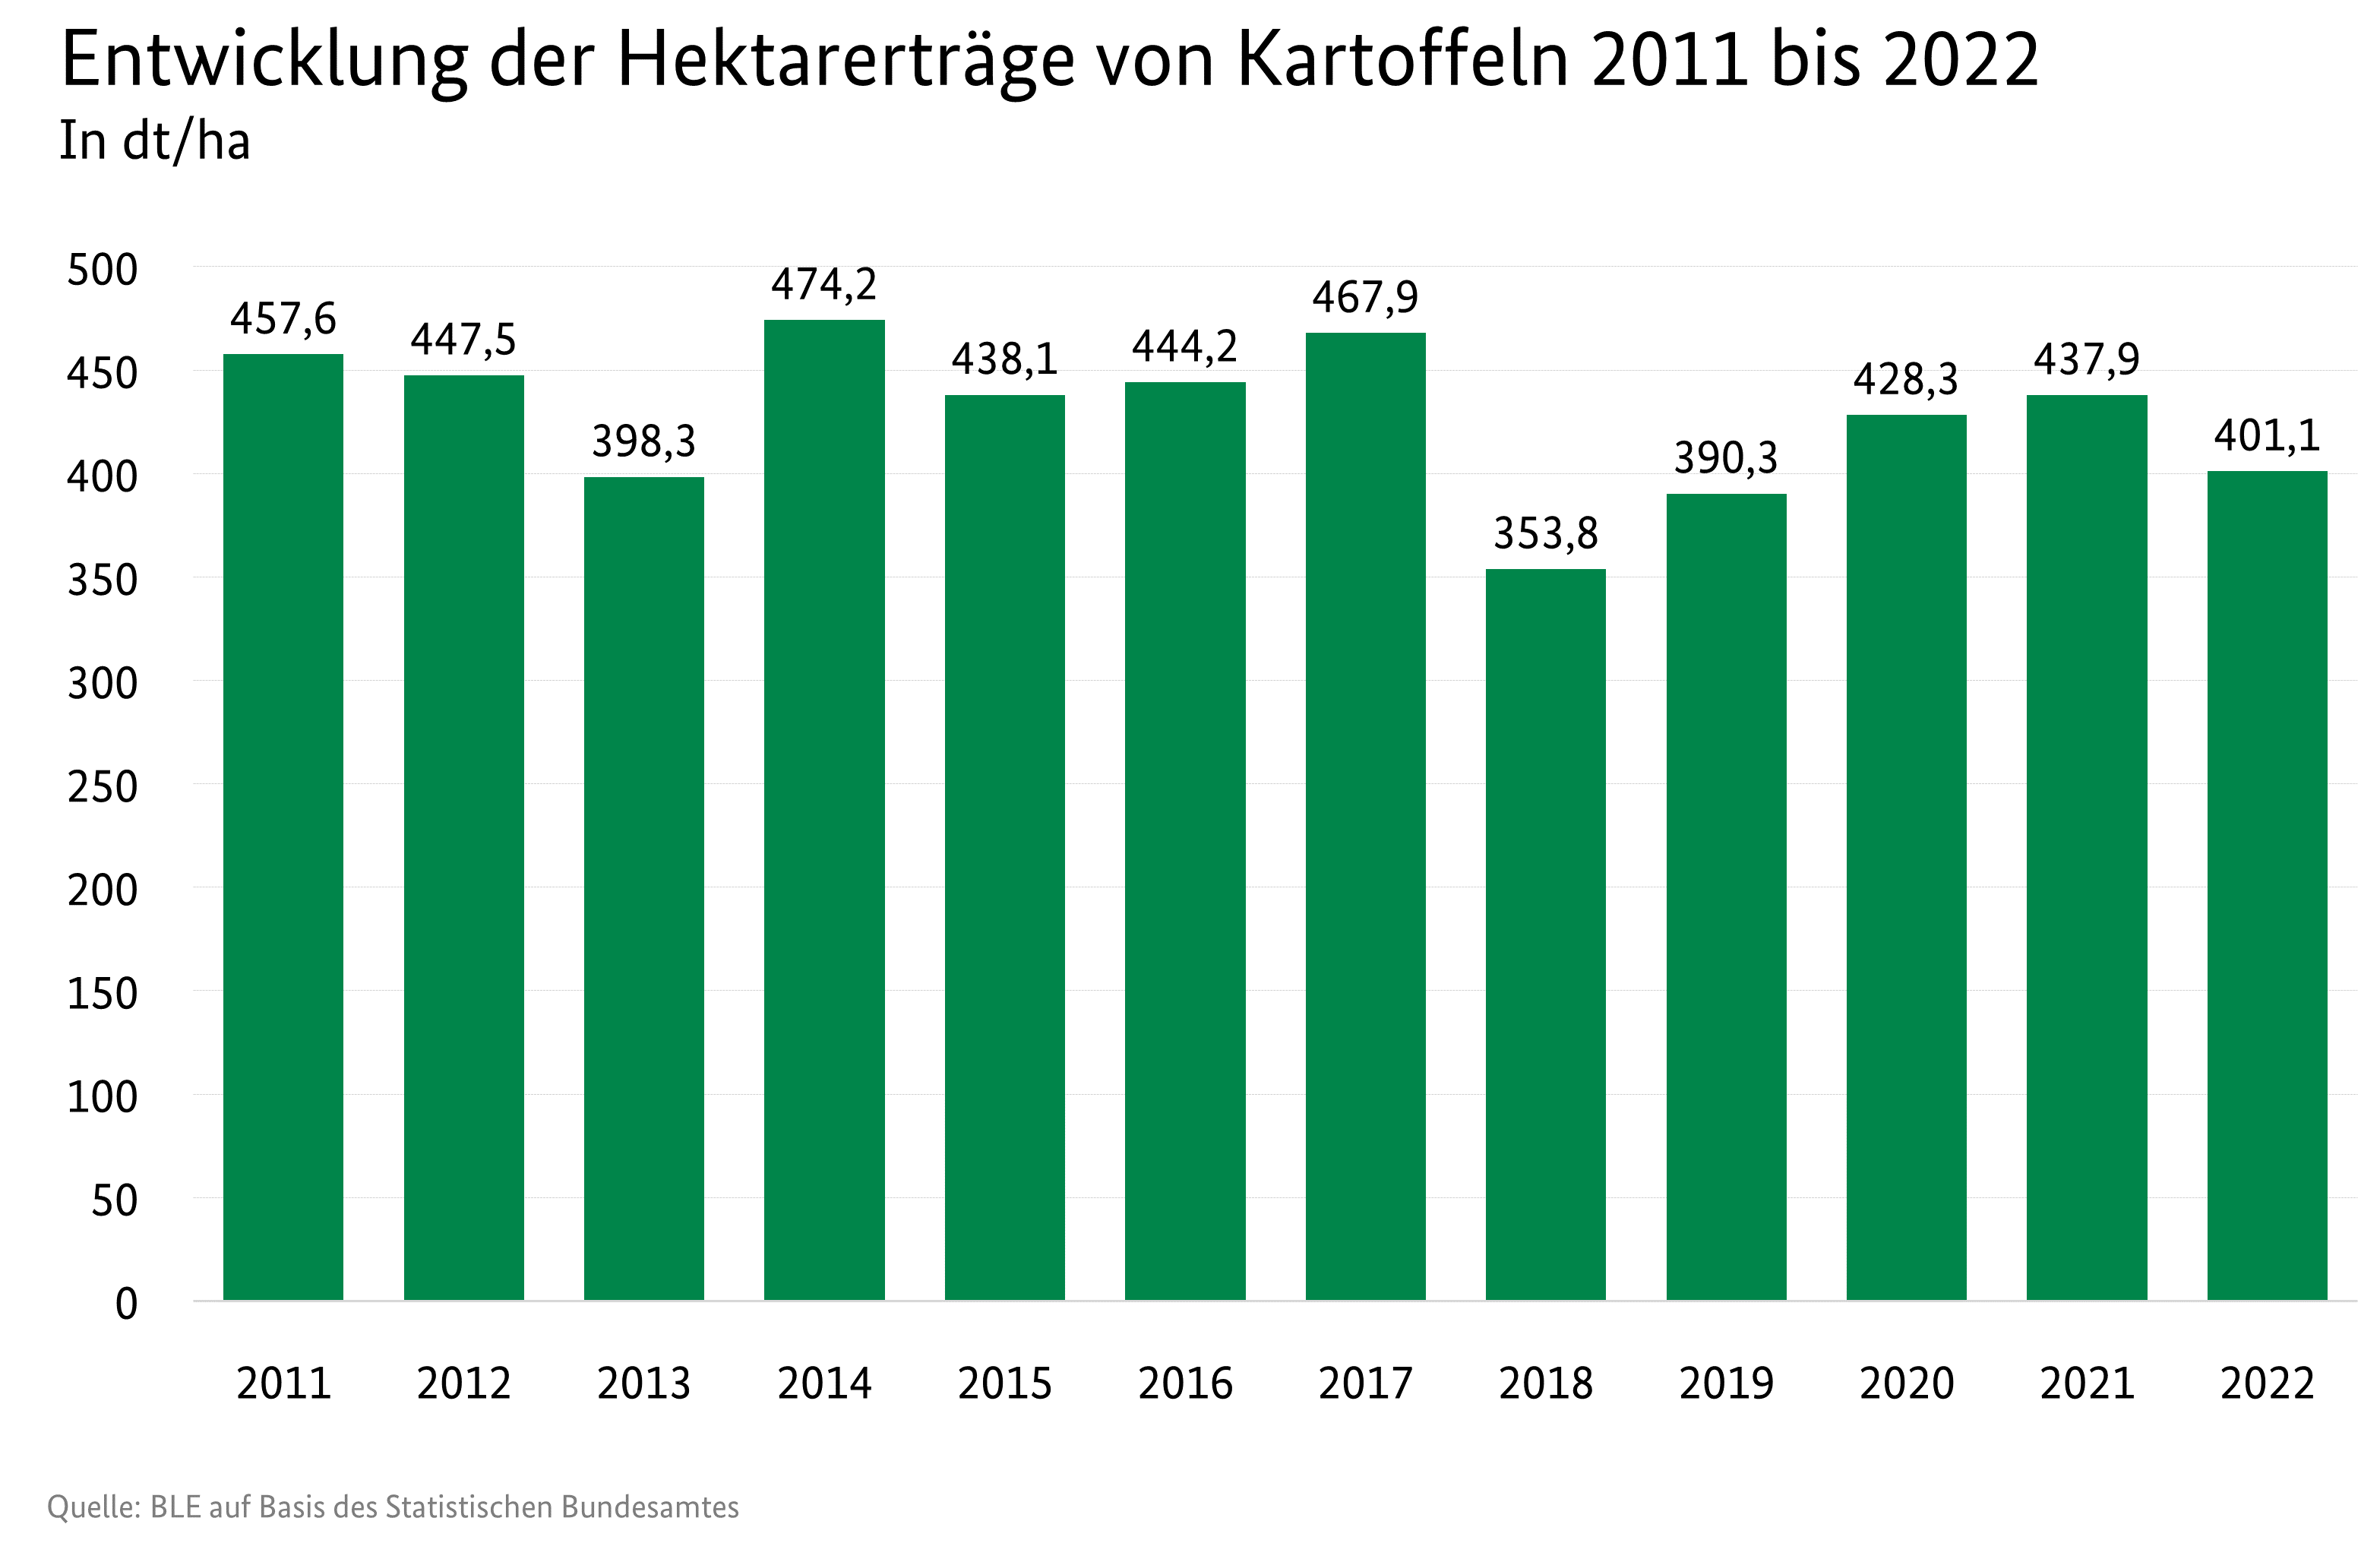  Balkendiagramm mit Entwicklung der Hektarerträge (dt/ha) von Kartoffeln für die Jahre 2011 bis 2021.